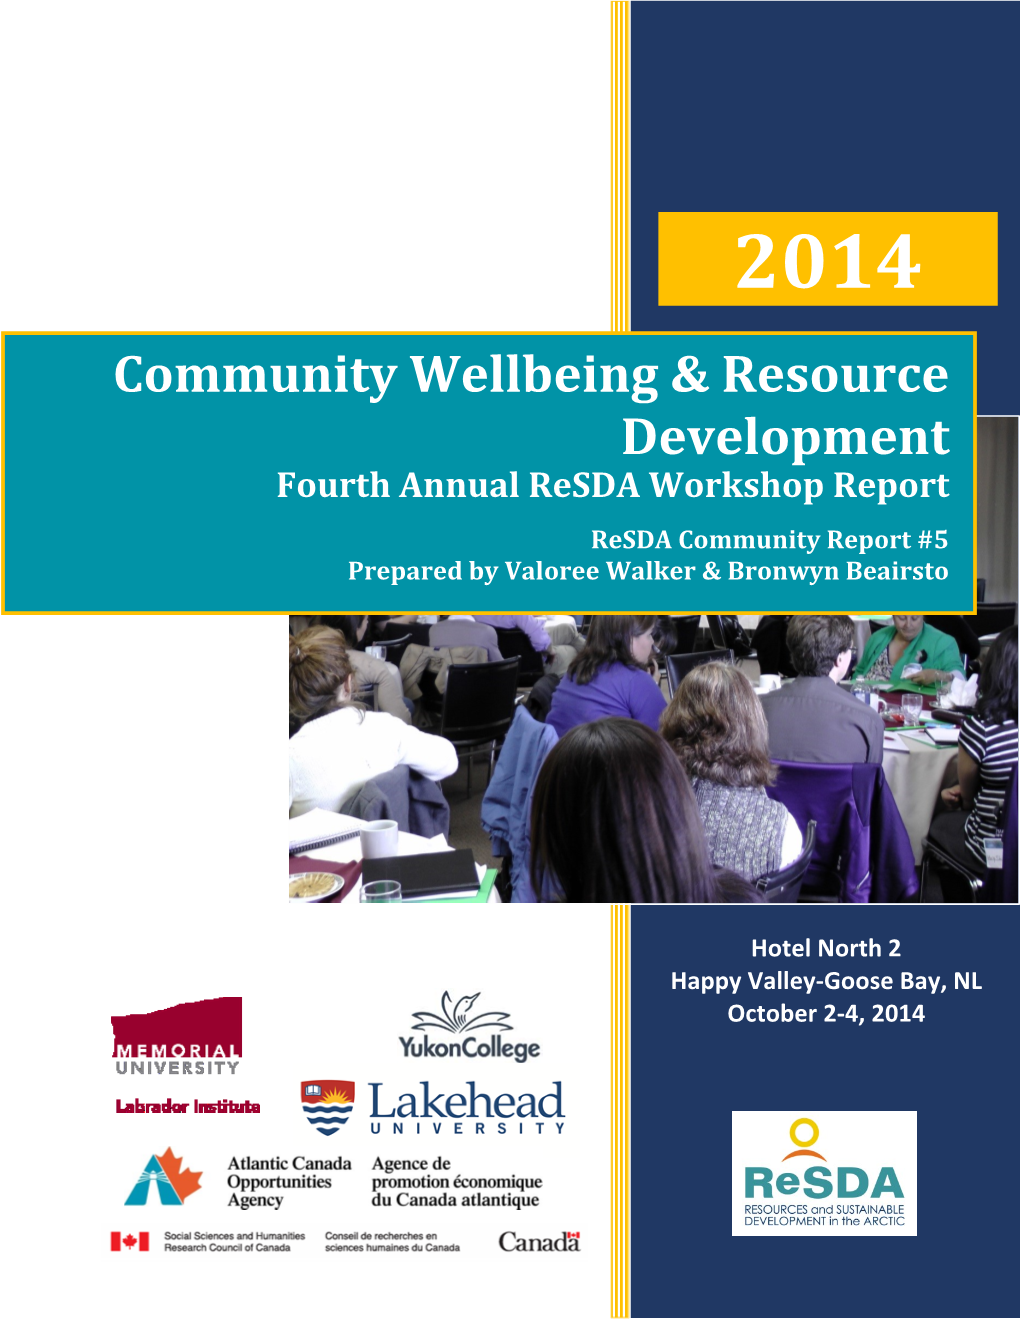 Community Wellbeing & Resource Development